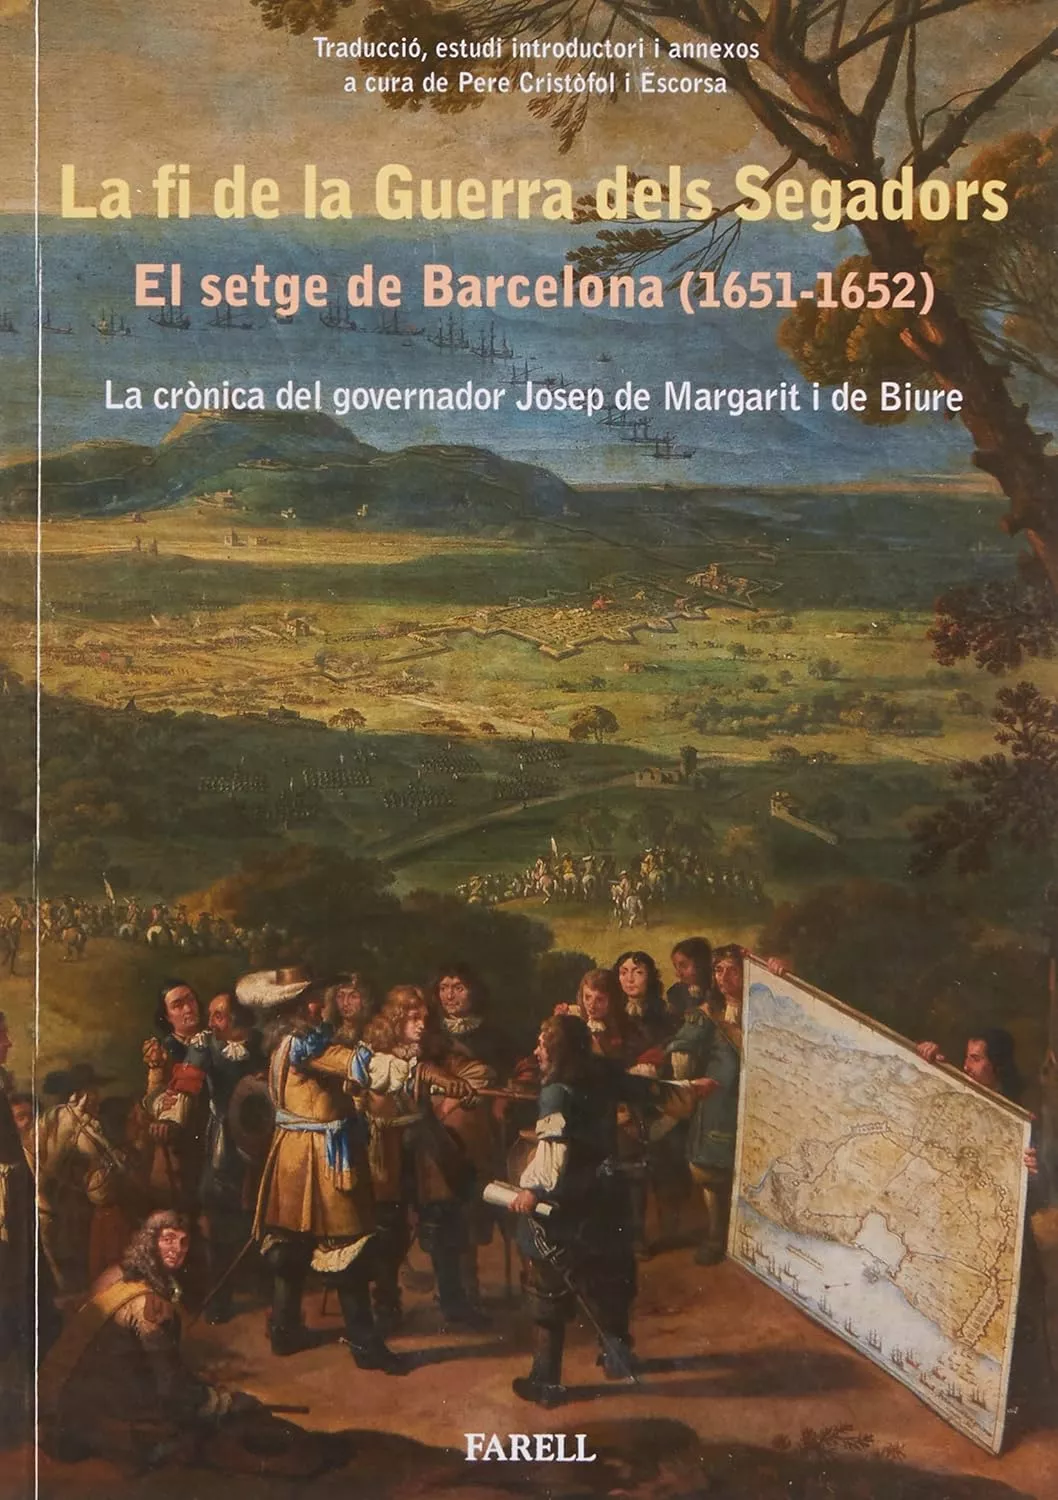 'La fi de la Guerra dels Segadors (1651-1652)'